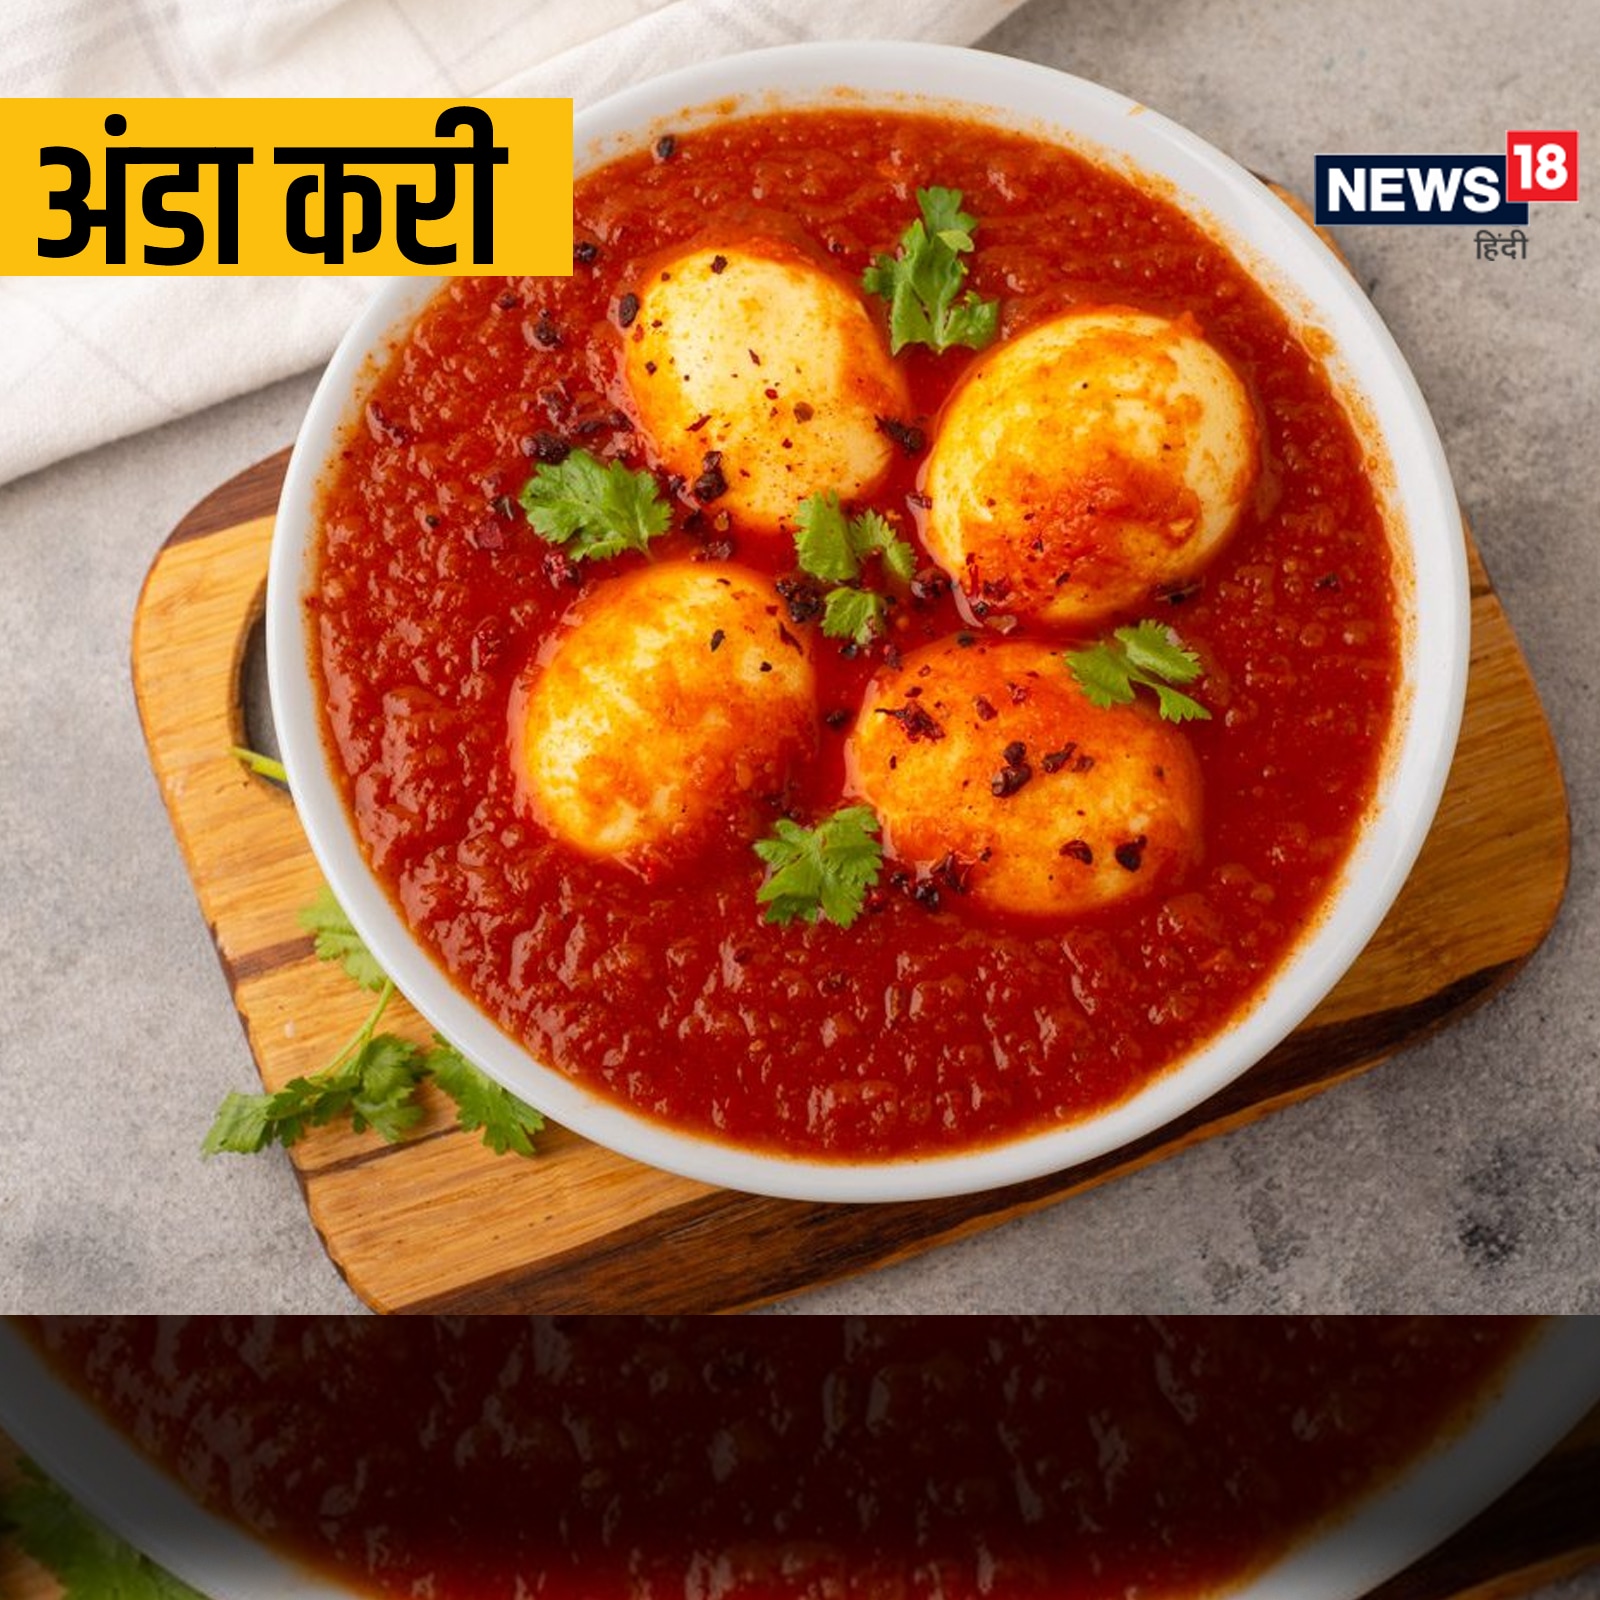 Egg Curry Recipe: ऐसे बनाएं अंडा करी, चाटते रह जाएंगे अपनी उंगलियां - how  to make egg curry recipe in hindi ans – News18 हिंदी